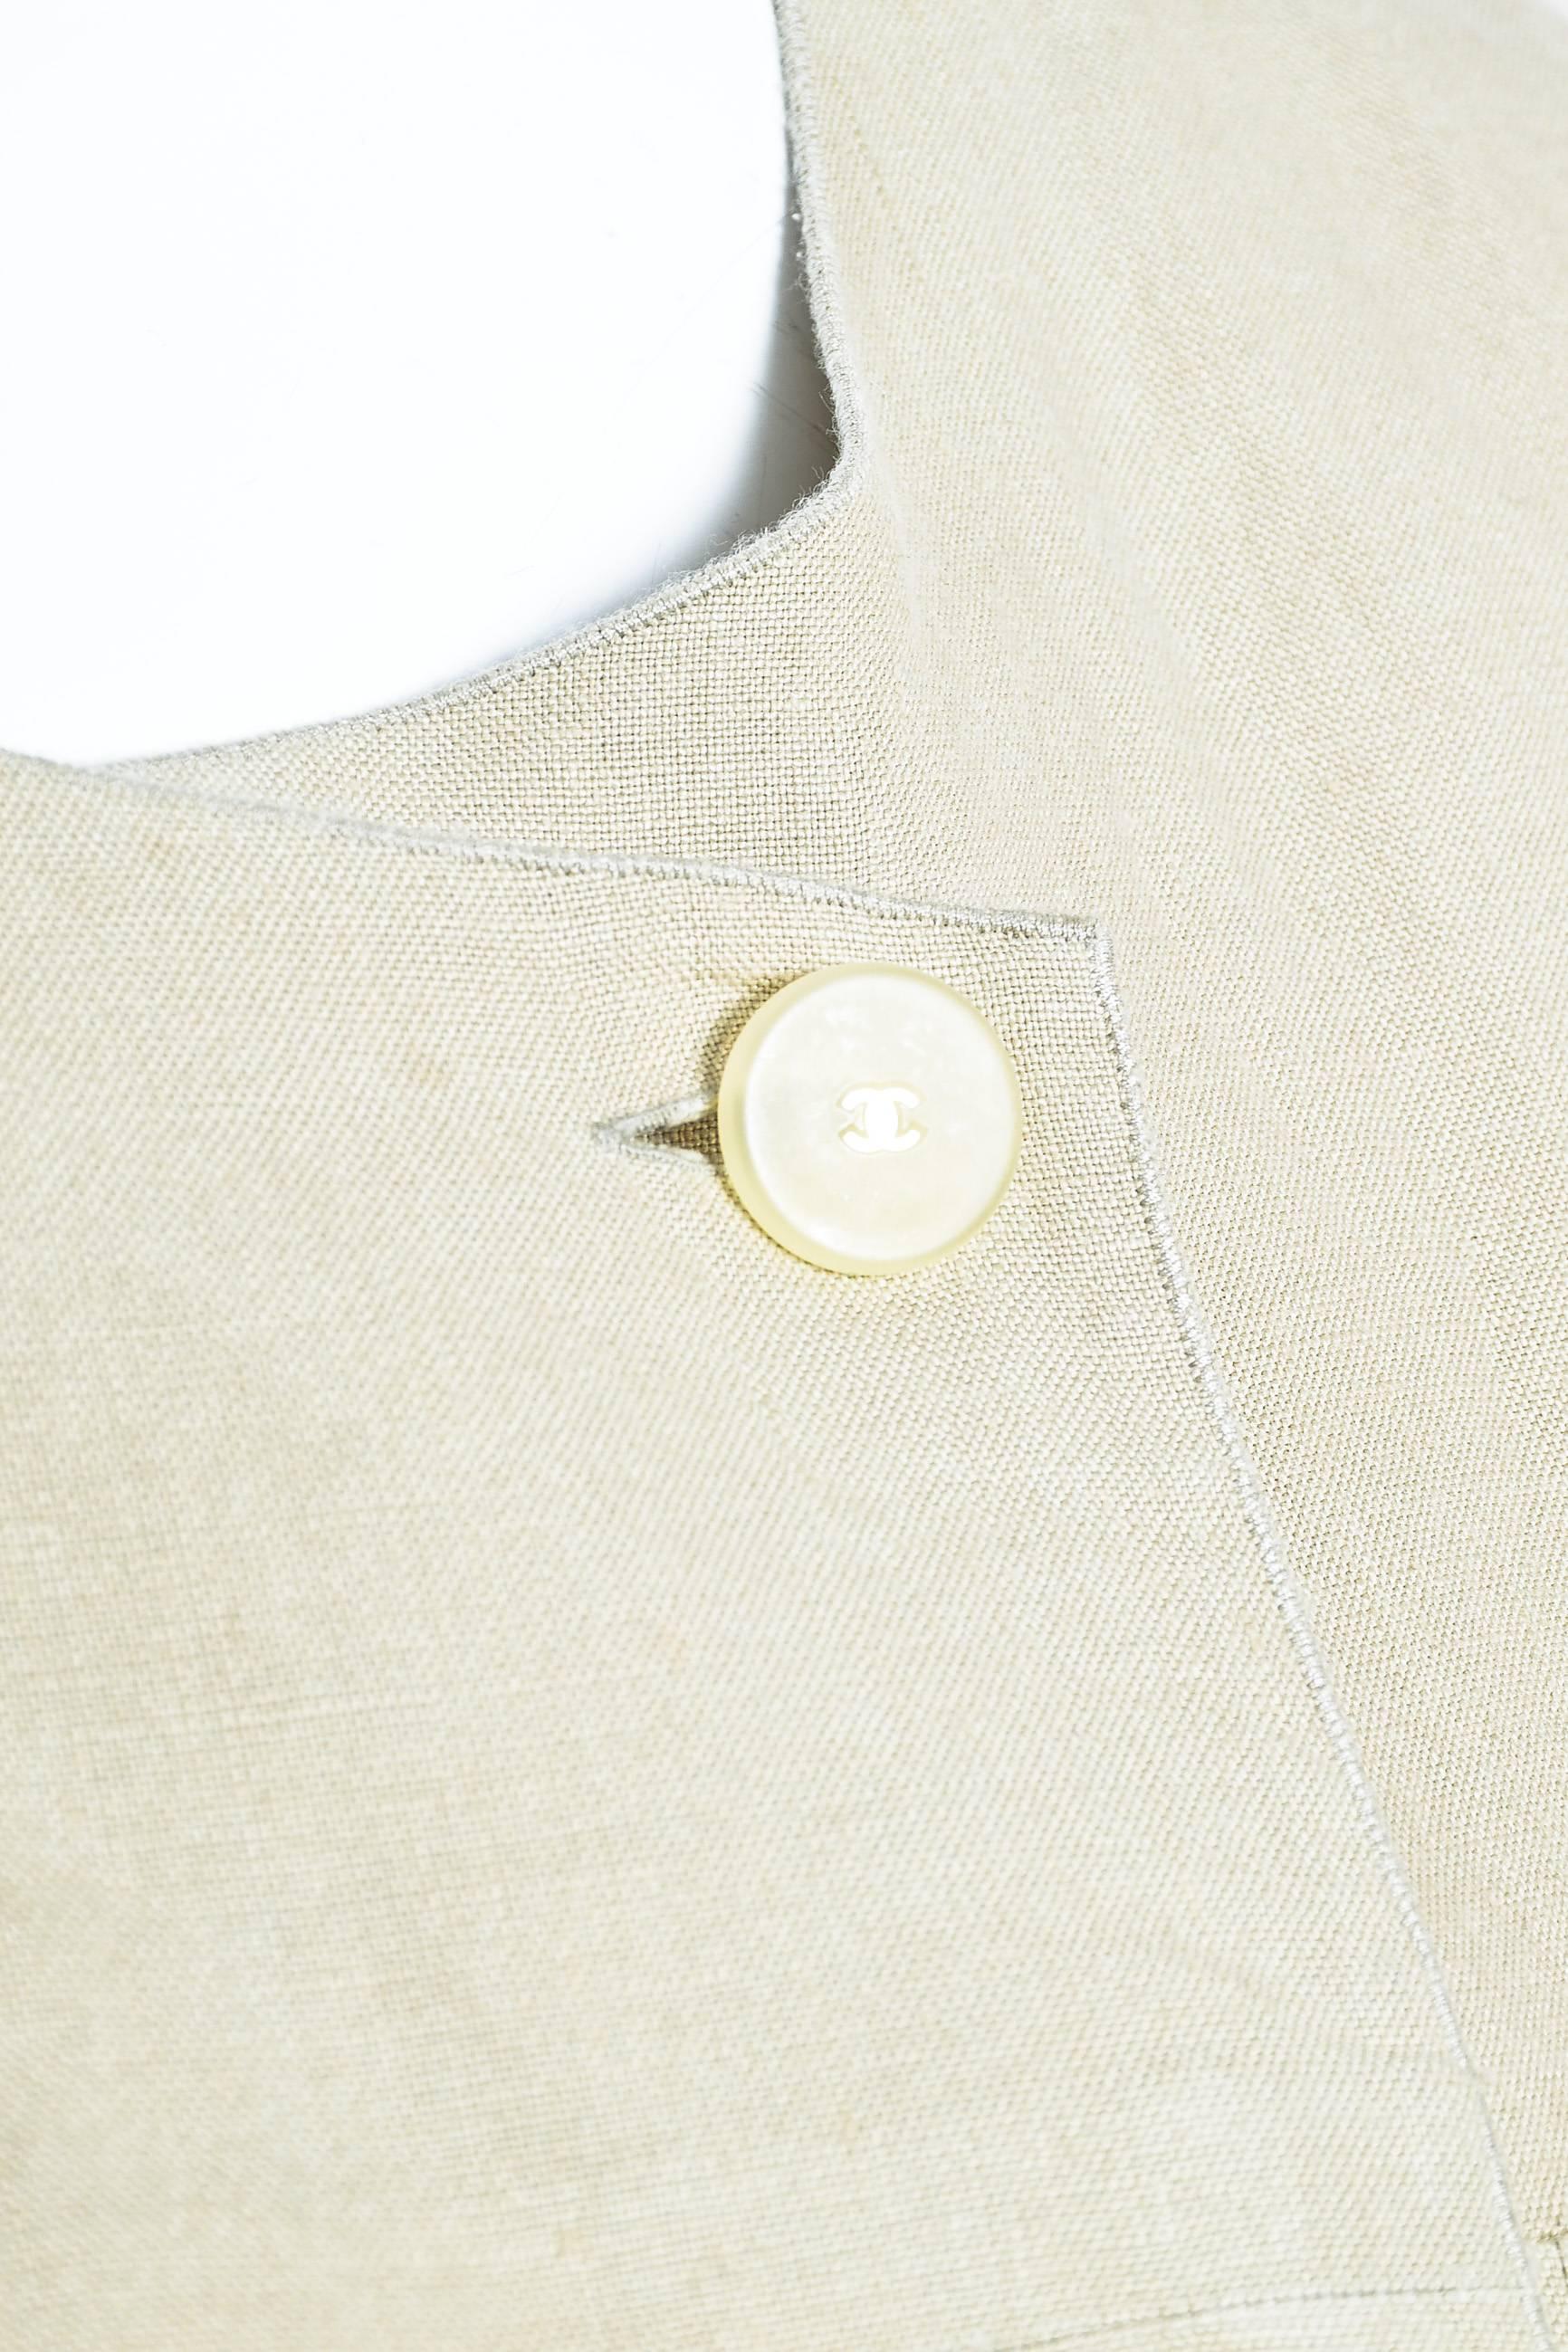 Women's Vintage Chanel 00C Khaki Beige Linen Asymmetrically Buttoned Vest Size 40 For Sale